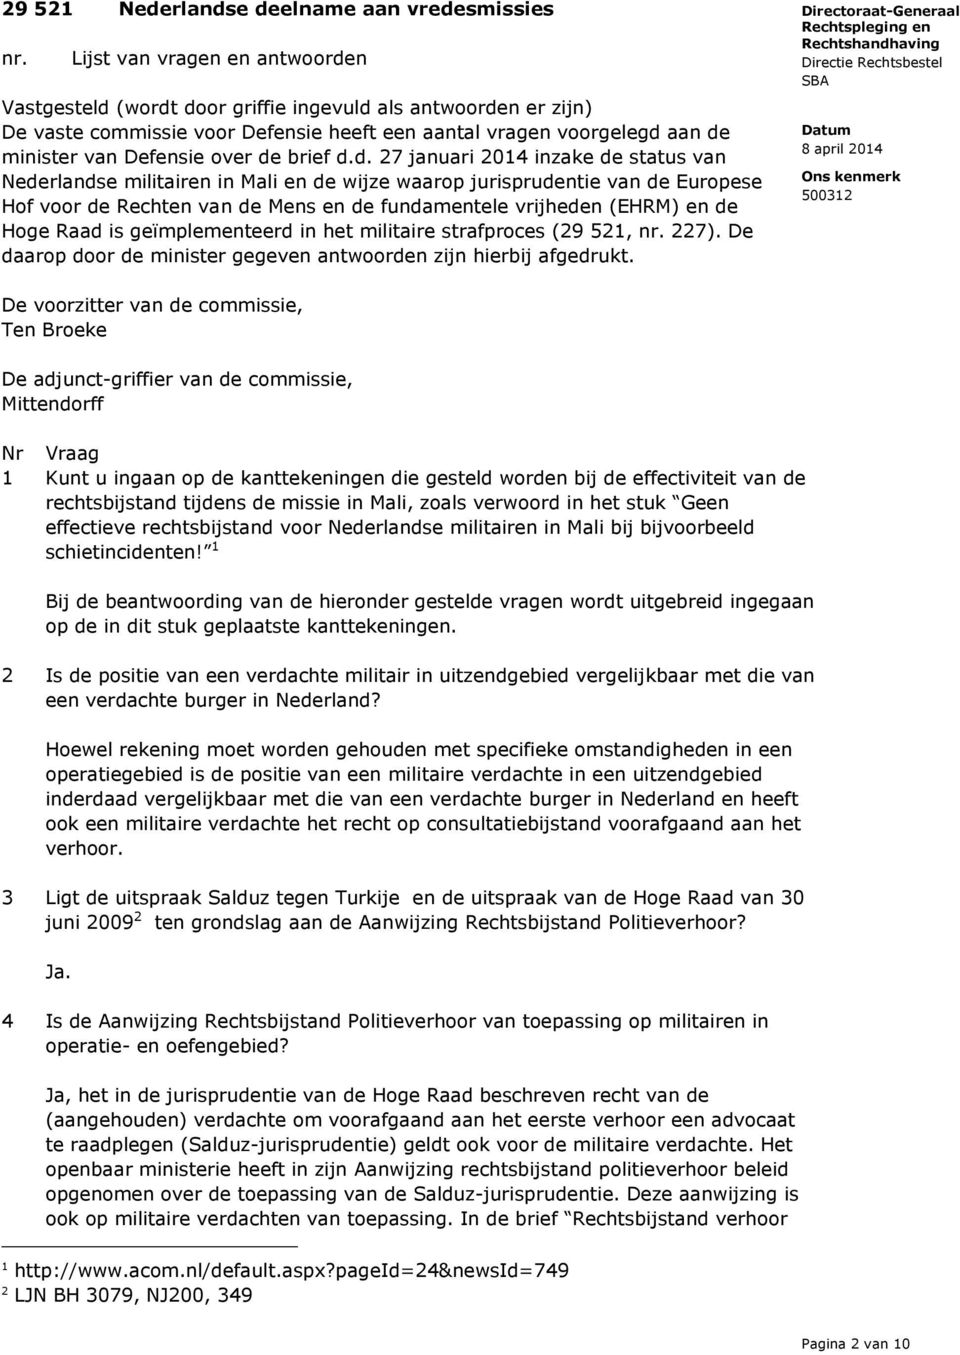 de brief d.d. 27 januari 2014 inzake de status van Nederlandse militairen in Mali en de wijze waarop jurisprudentie van de Europese Hof voor de Rechten van de Mens en de fundamentele vrijheden (EHRM)